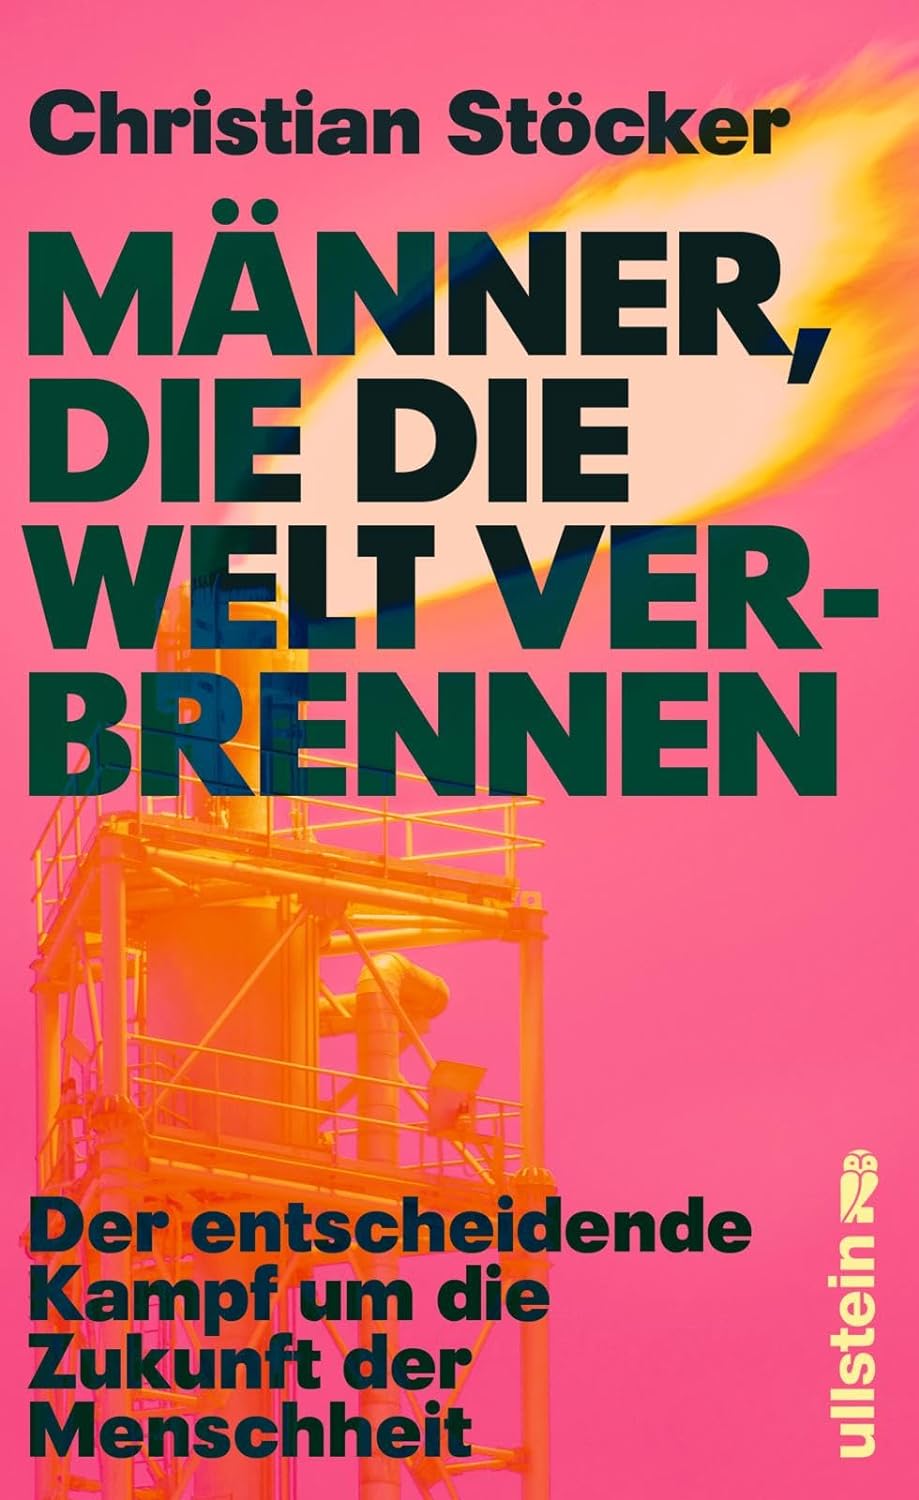 Christian Stöcker: Männer, die die Welt verbrennen (Hardcover, german language, Ullstein)